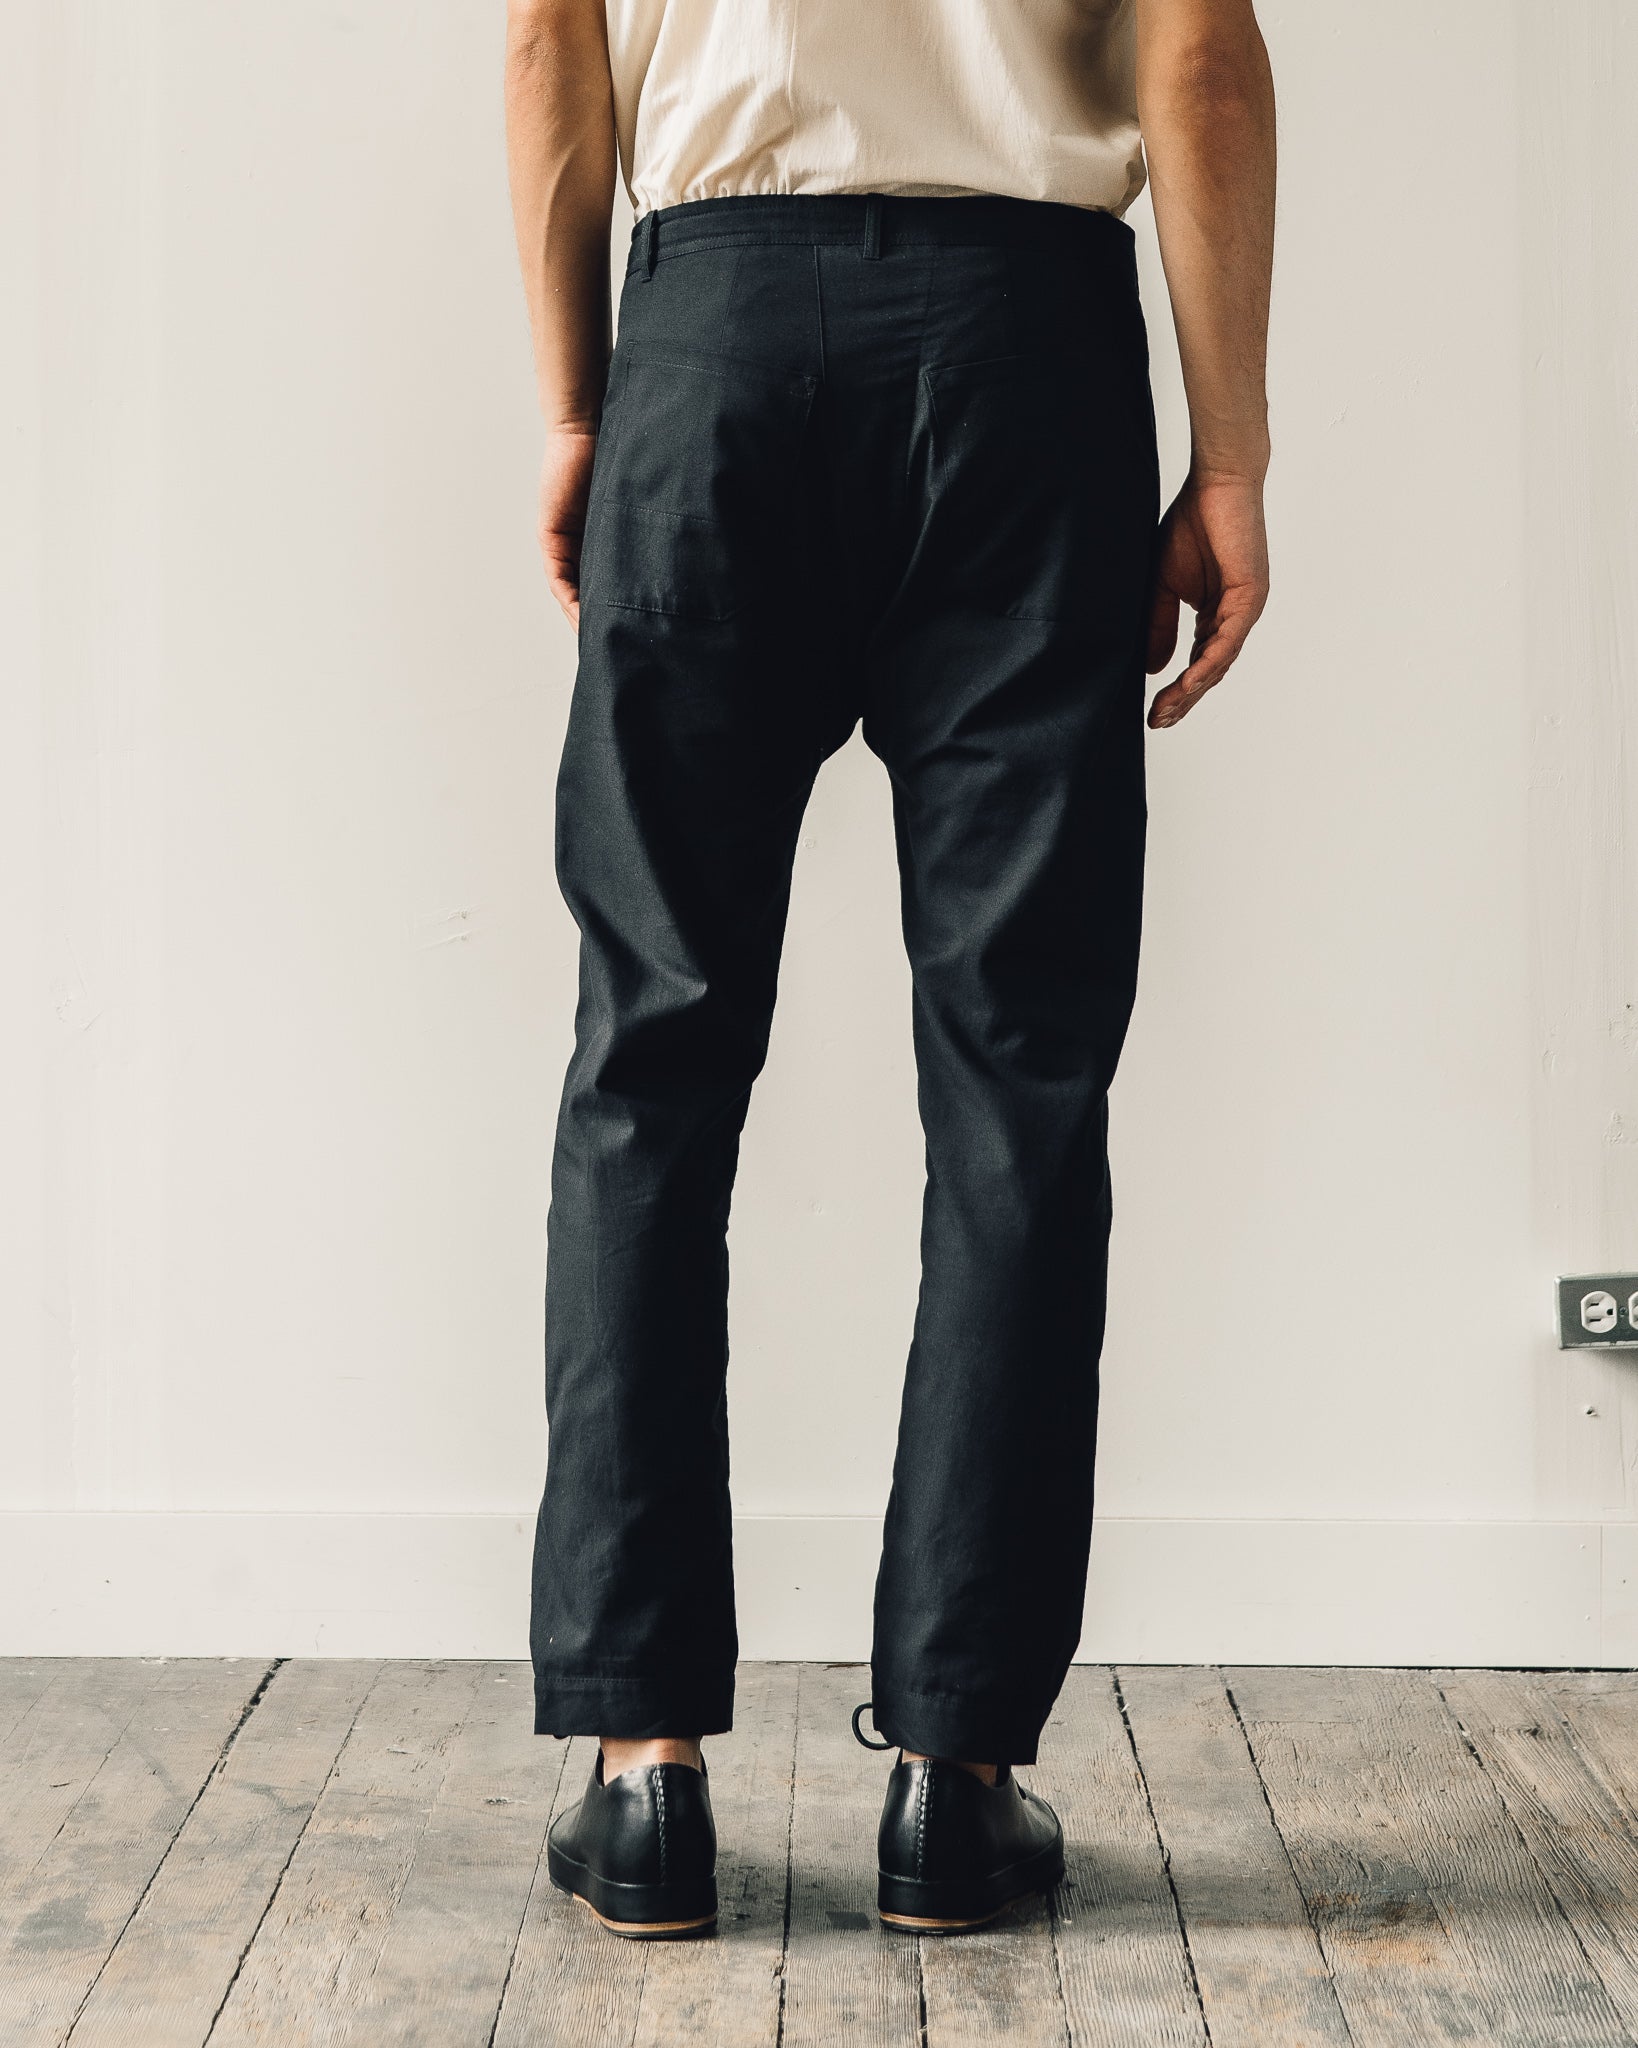 Jan-Jan Van Essche Trousers #49, Black Soft Twill